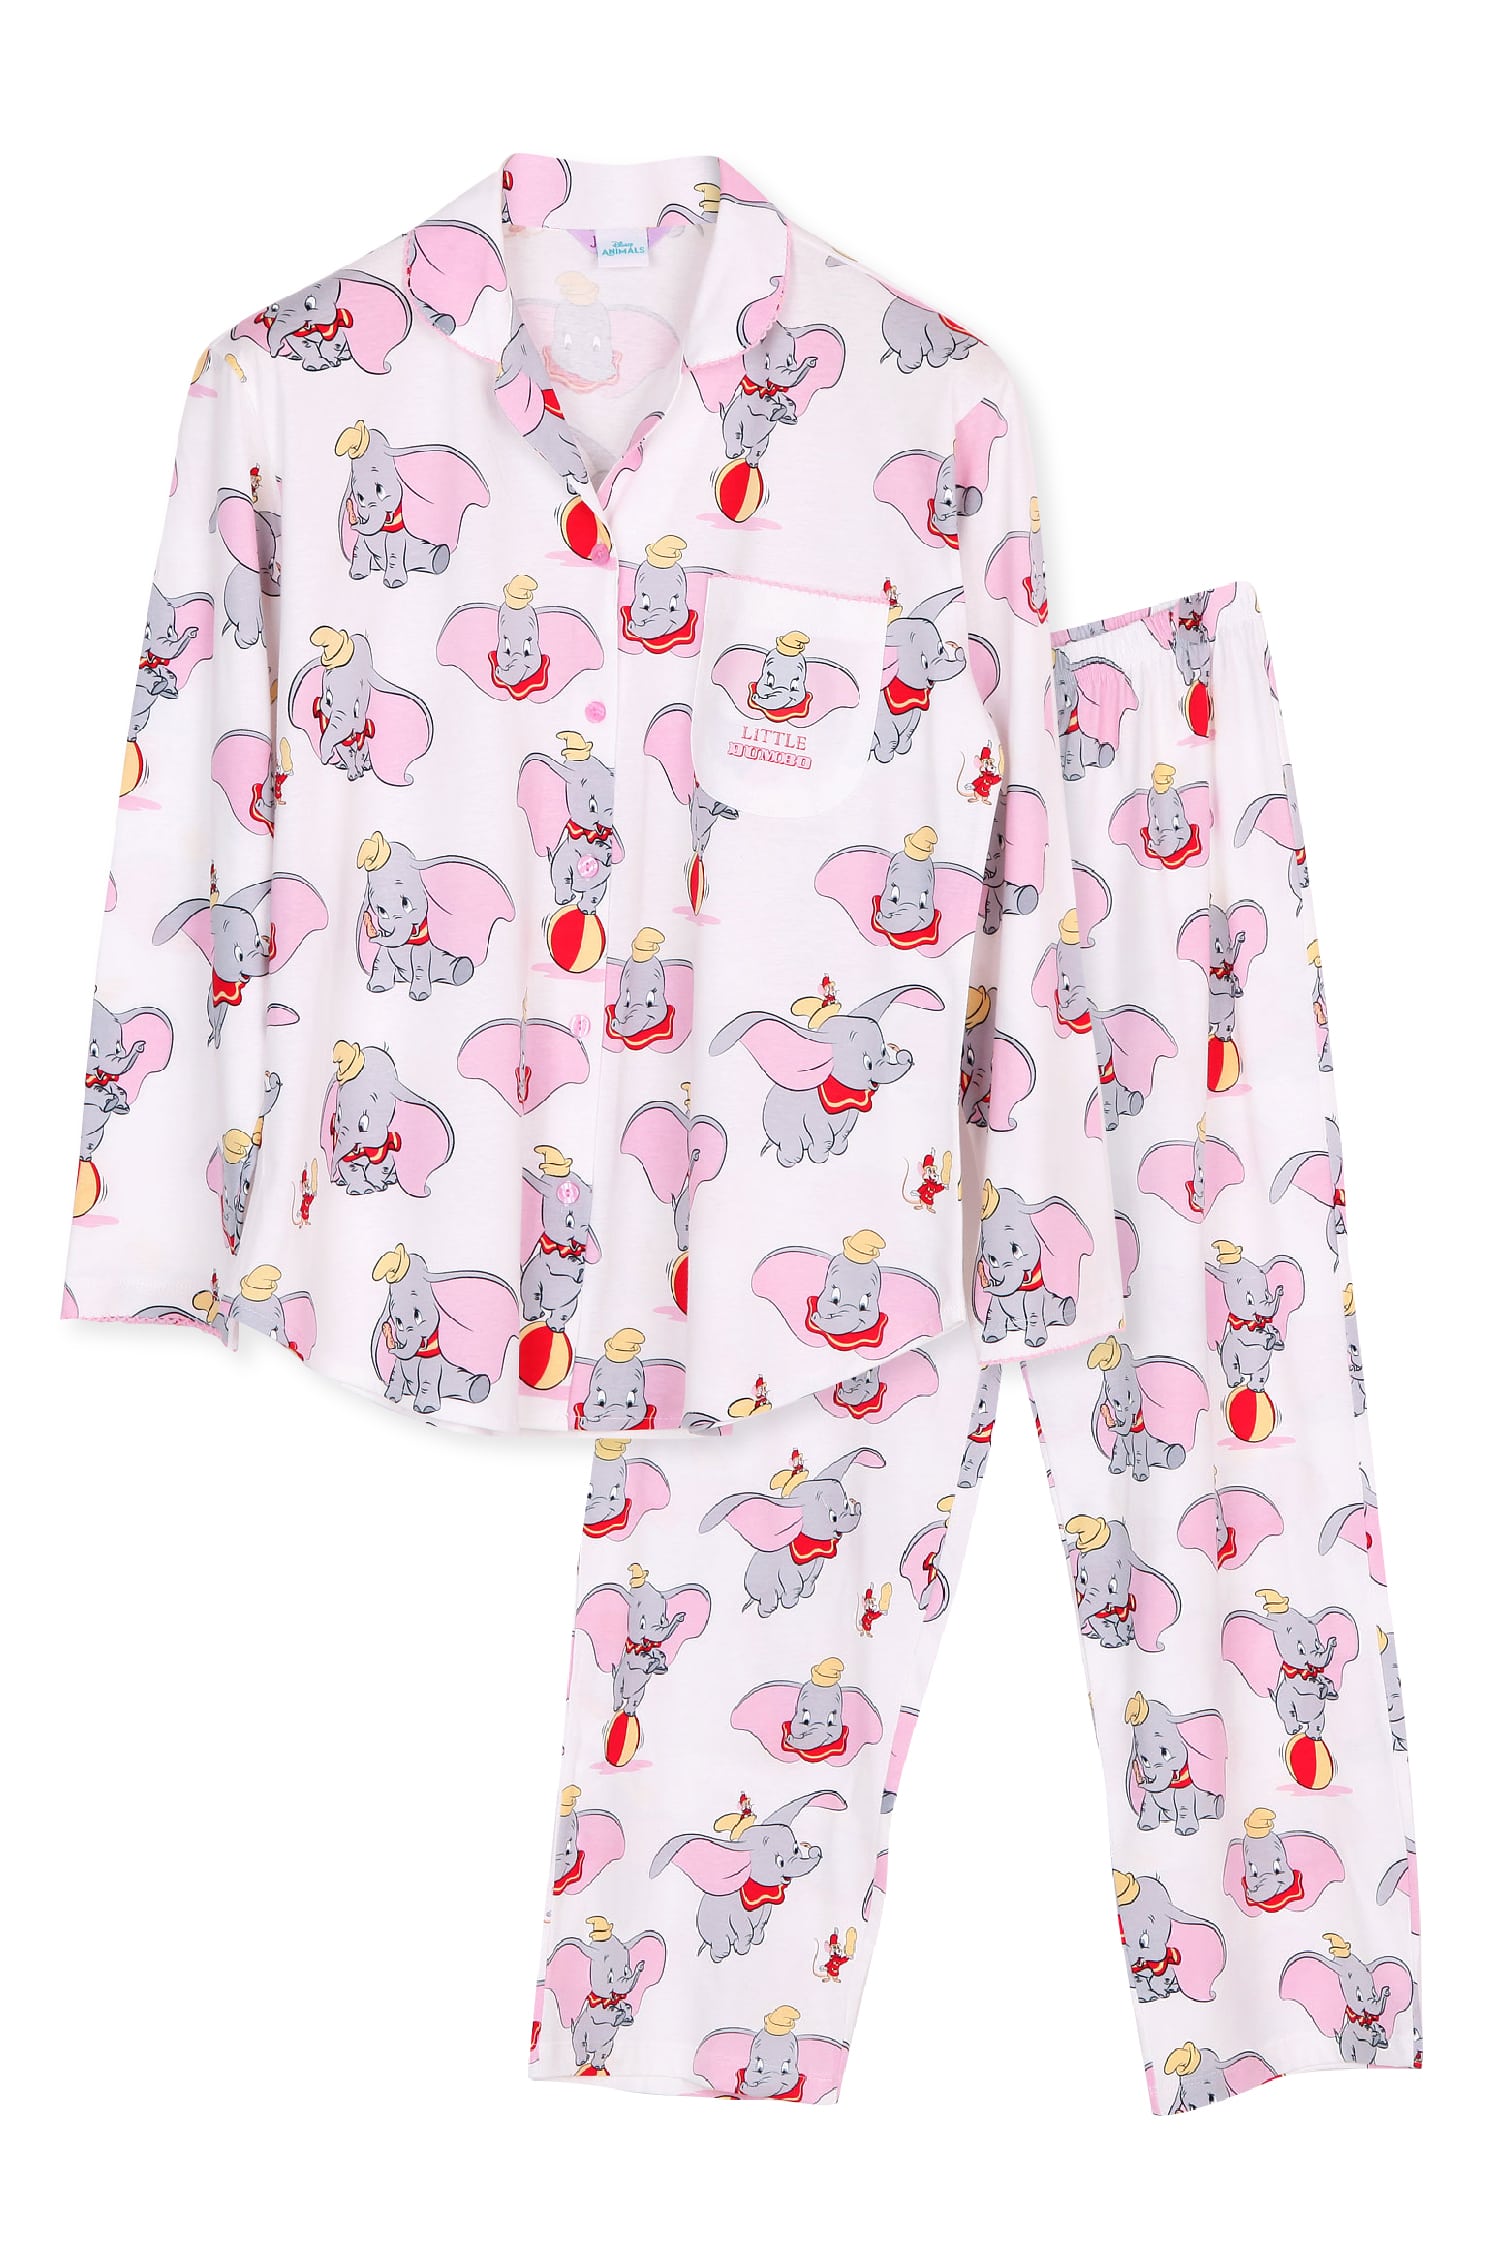 ชุดนอนผู้หญิง JOSILINS เซตเสื้อแขนยาว และกางเกงขายาว Disney Animals : The Little Dumbo สีครีม